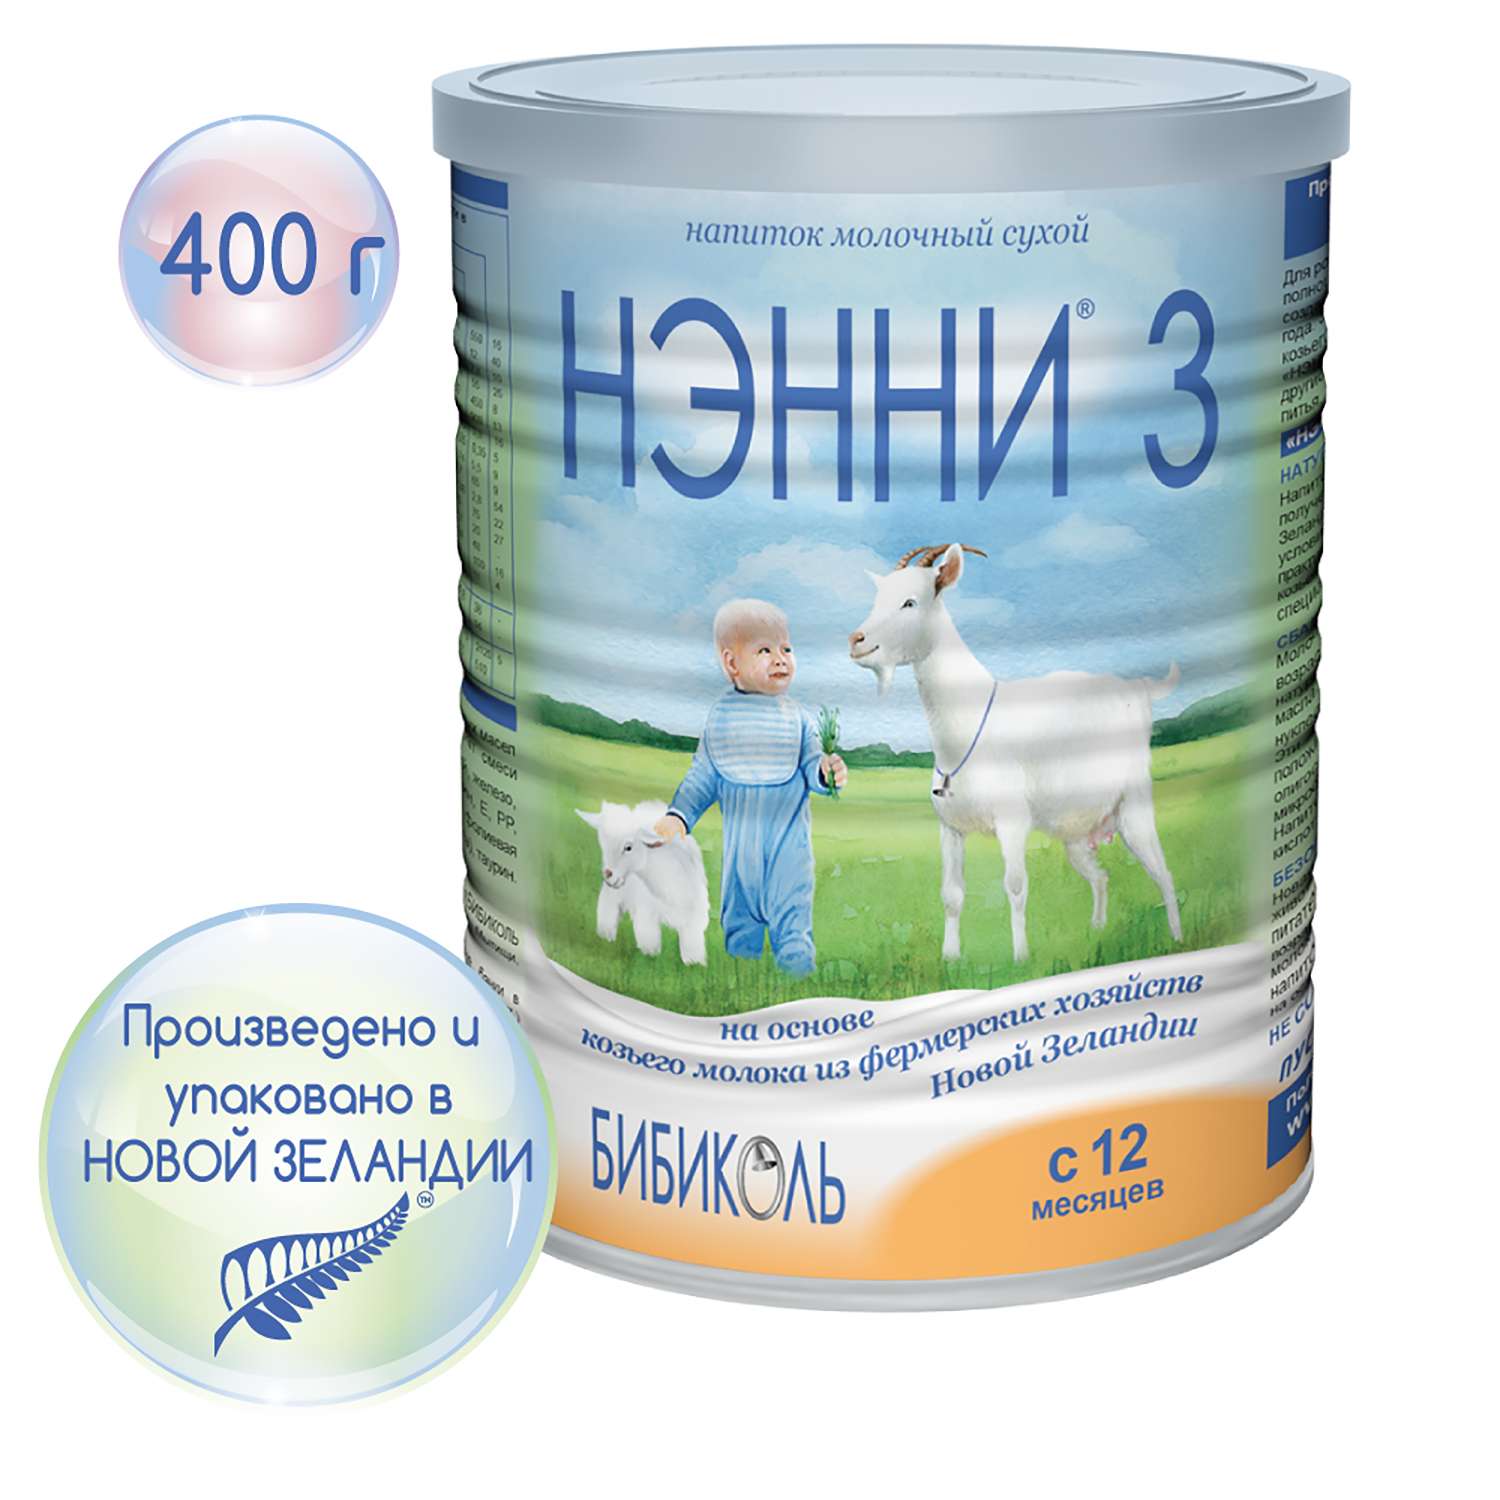 Молочный напиток Бибиколь 3 на основе козьего молока 400 г с 12 мес - фото 2